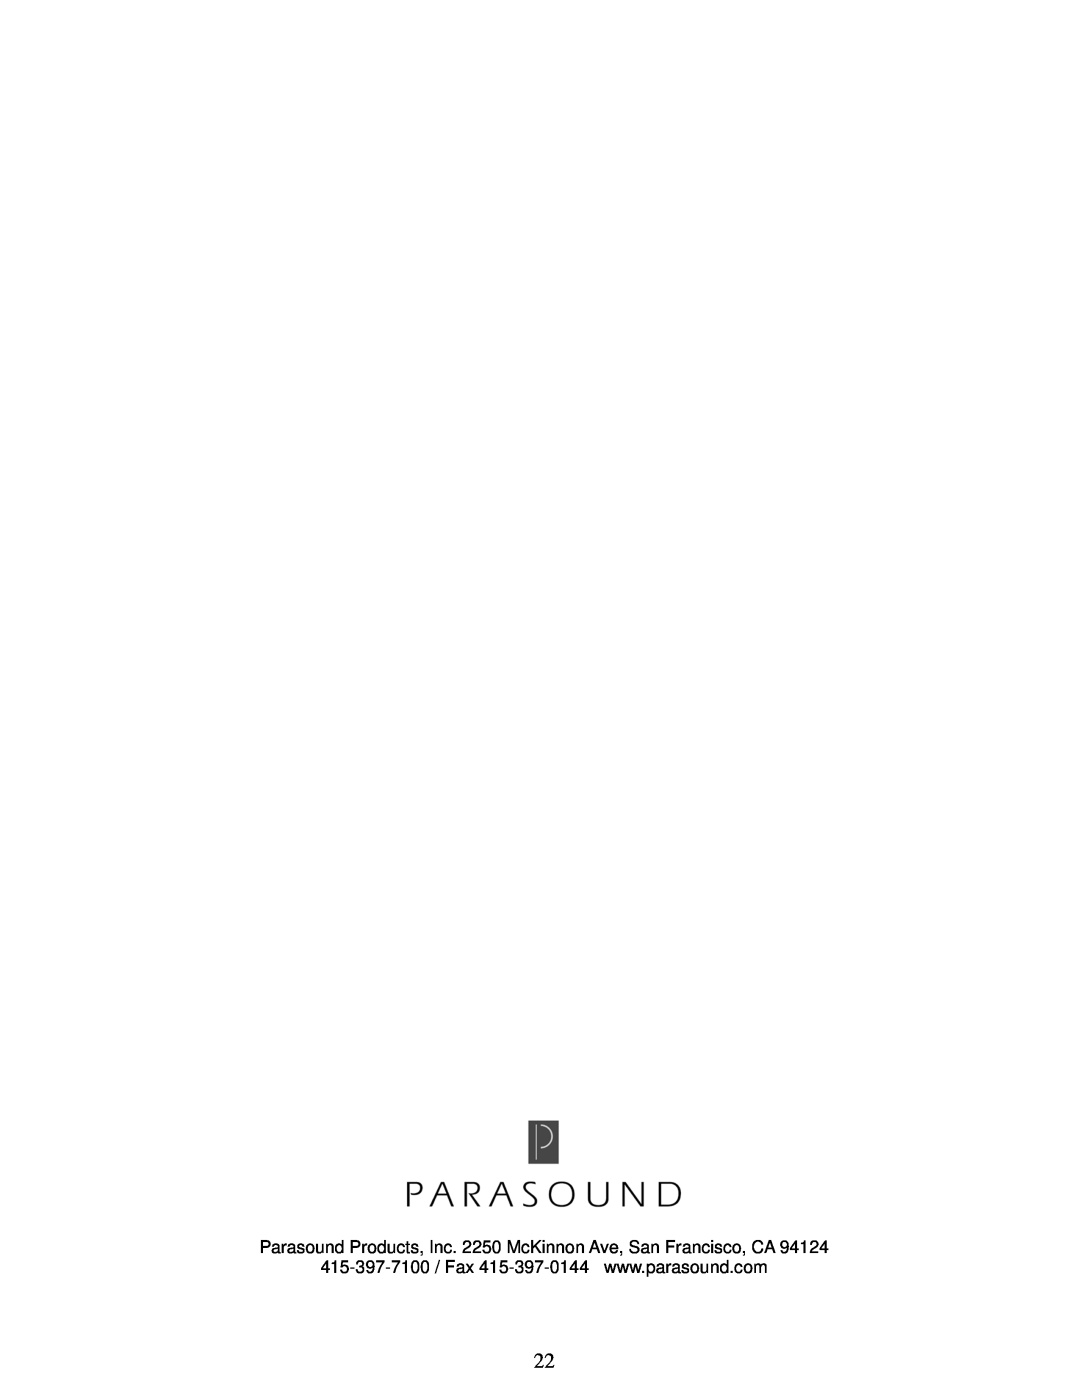 Parasound P 5 manual 